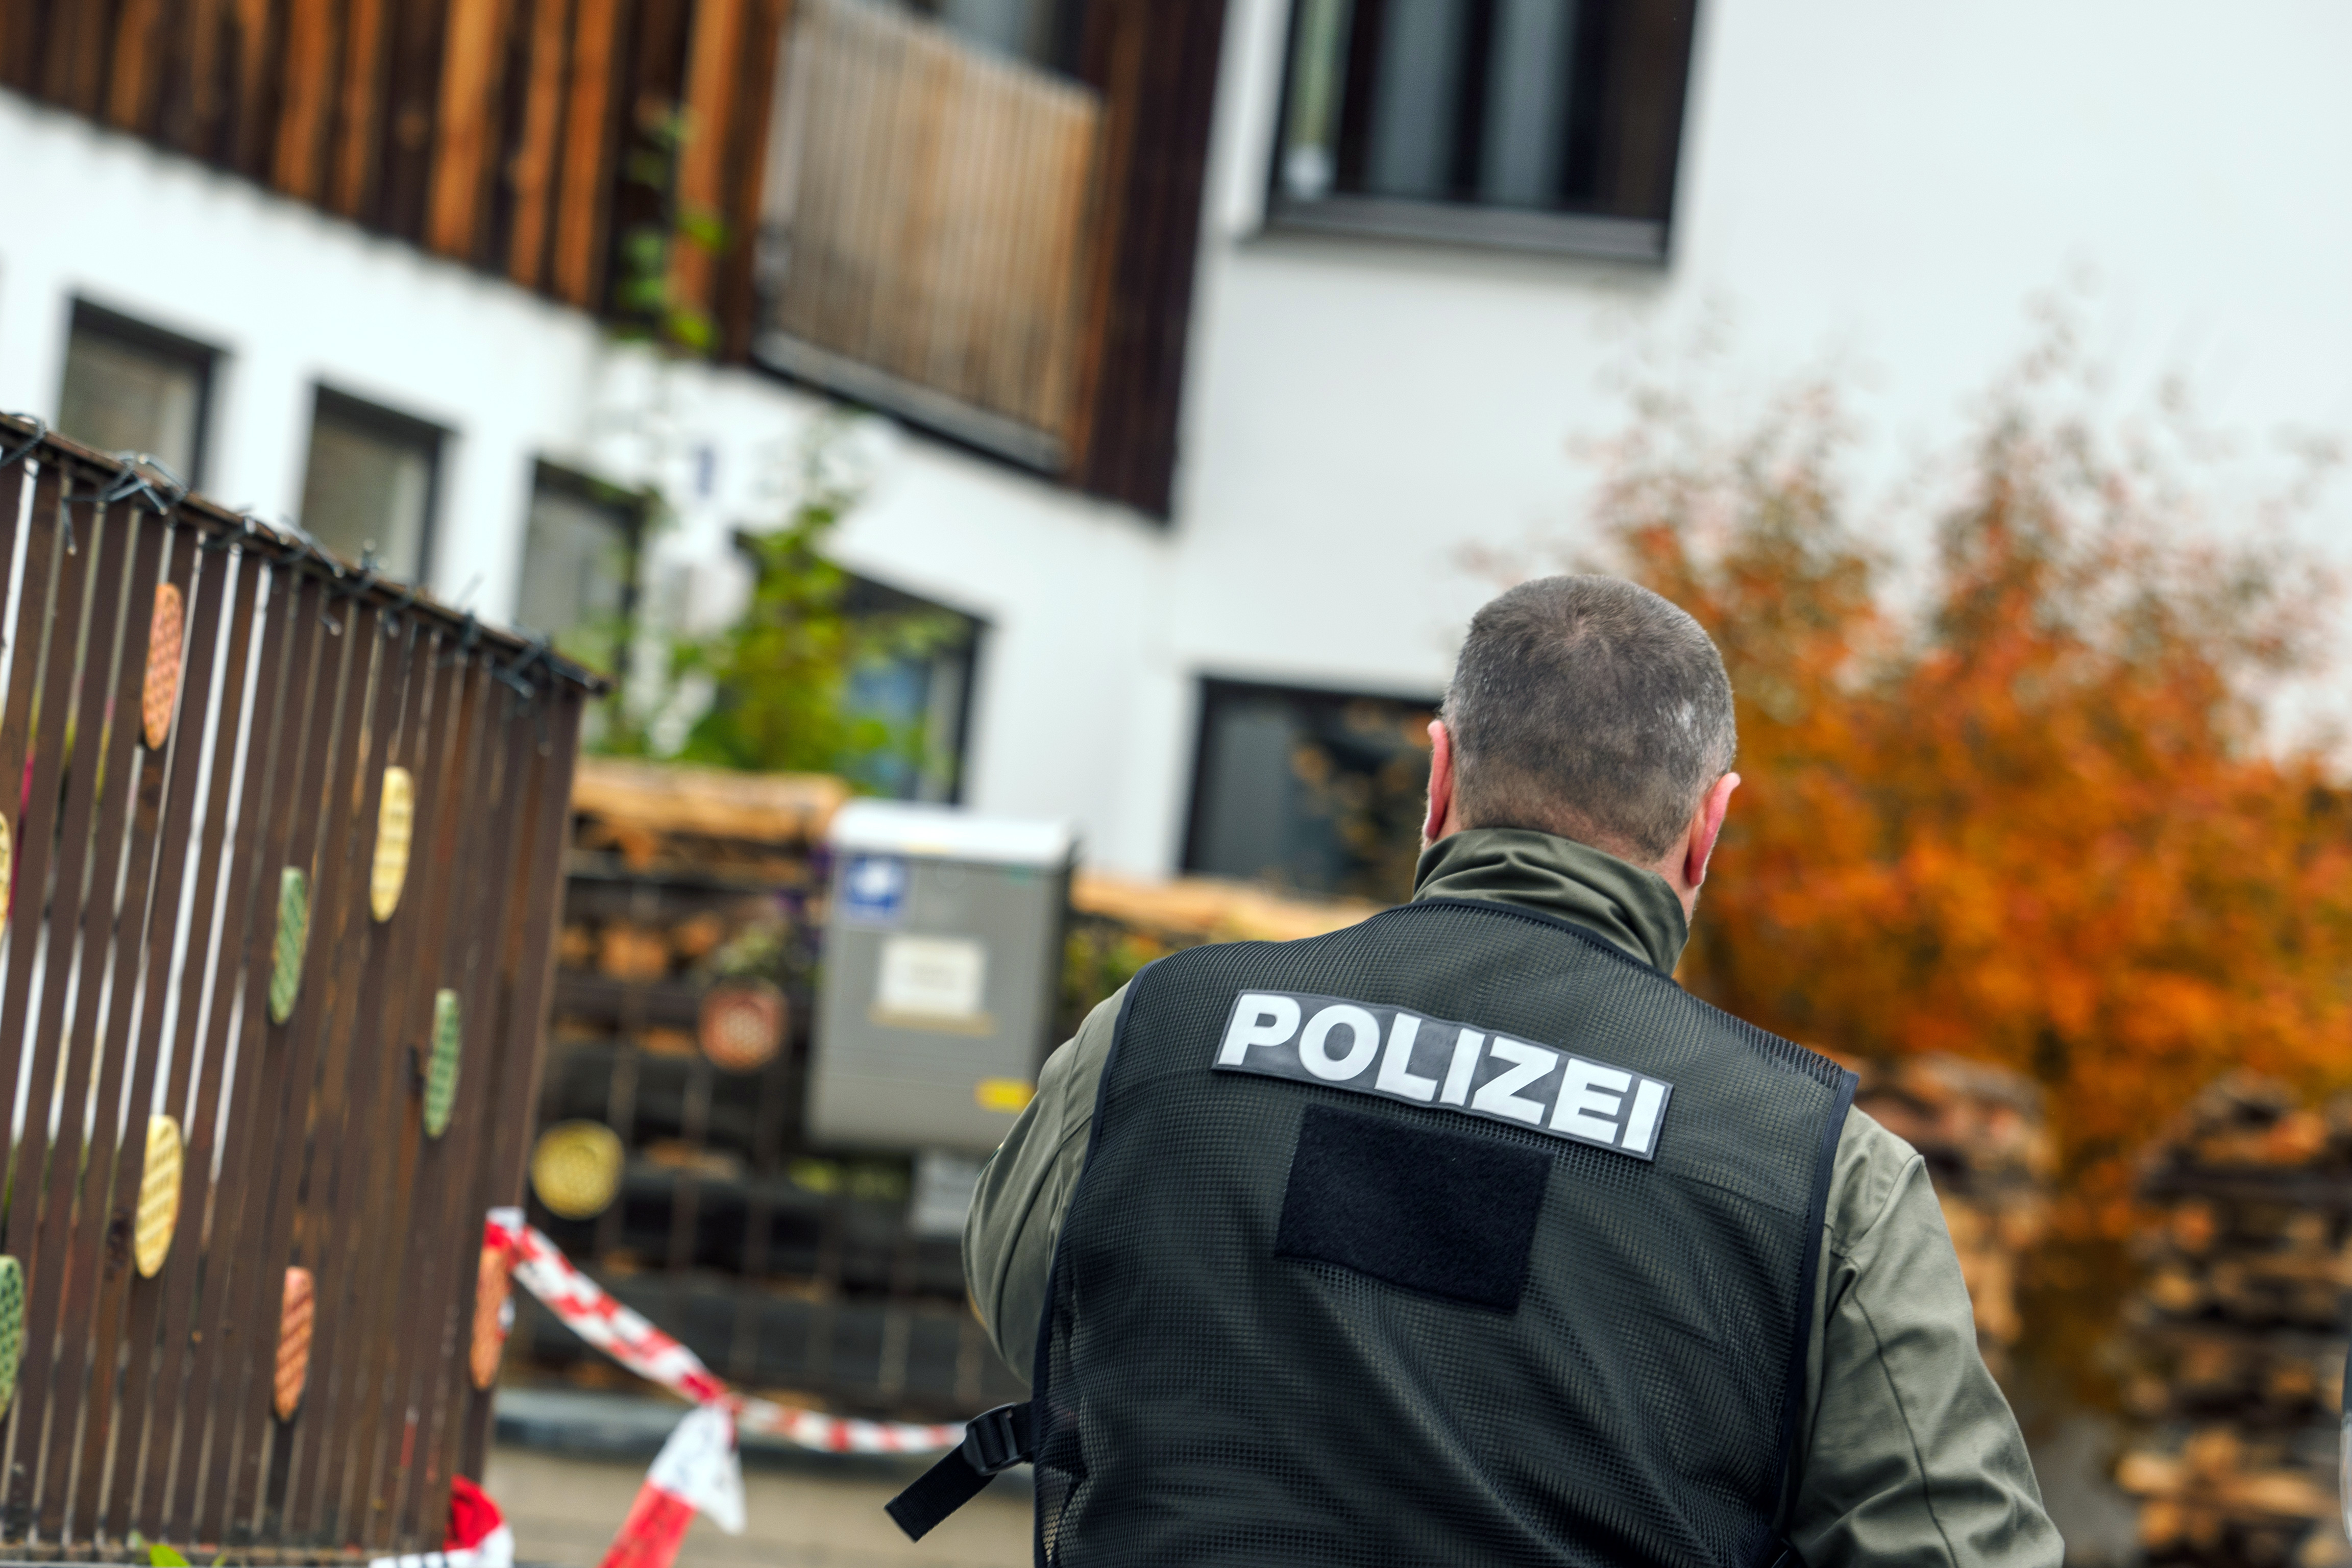 Nagyszabású terrorellenes razzia zajlik Németországban